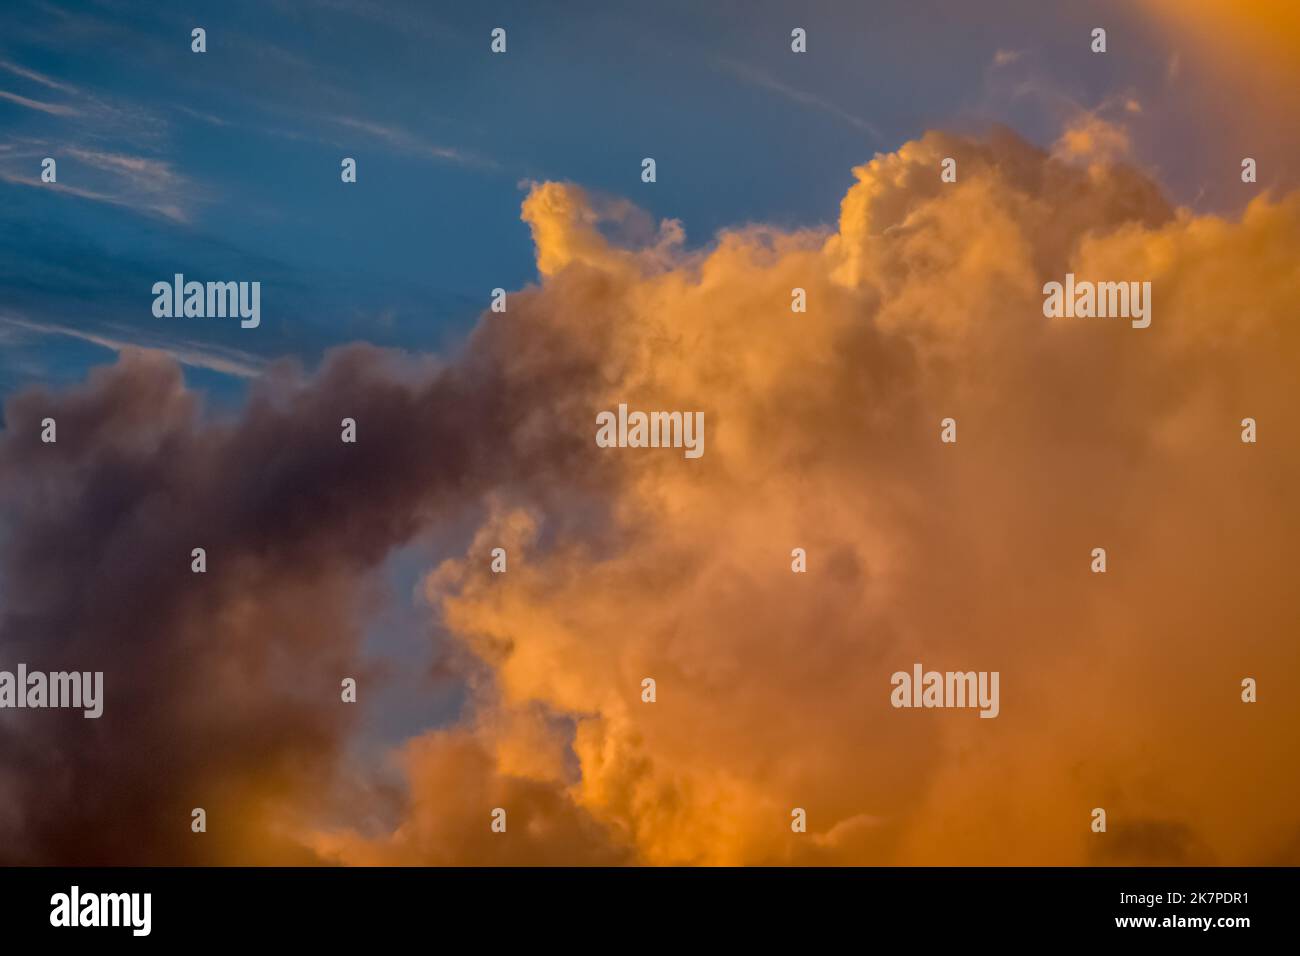 Amanecer espectacular cielo con nubes en una fila, colorido paisaje nublado Foto de stock